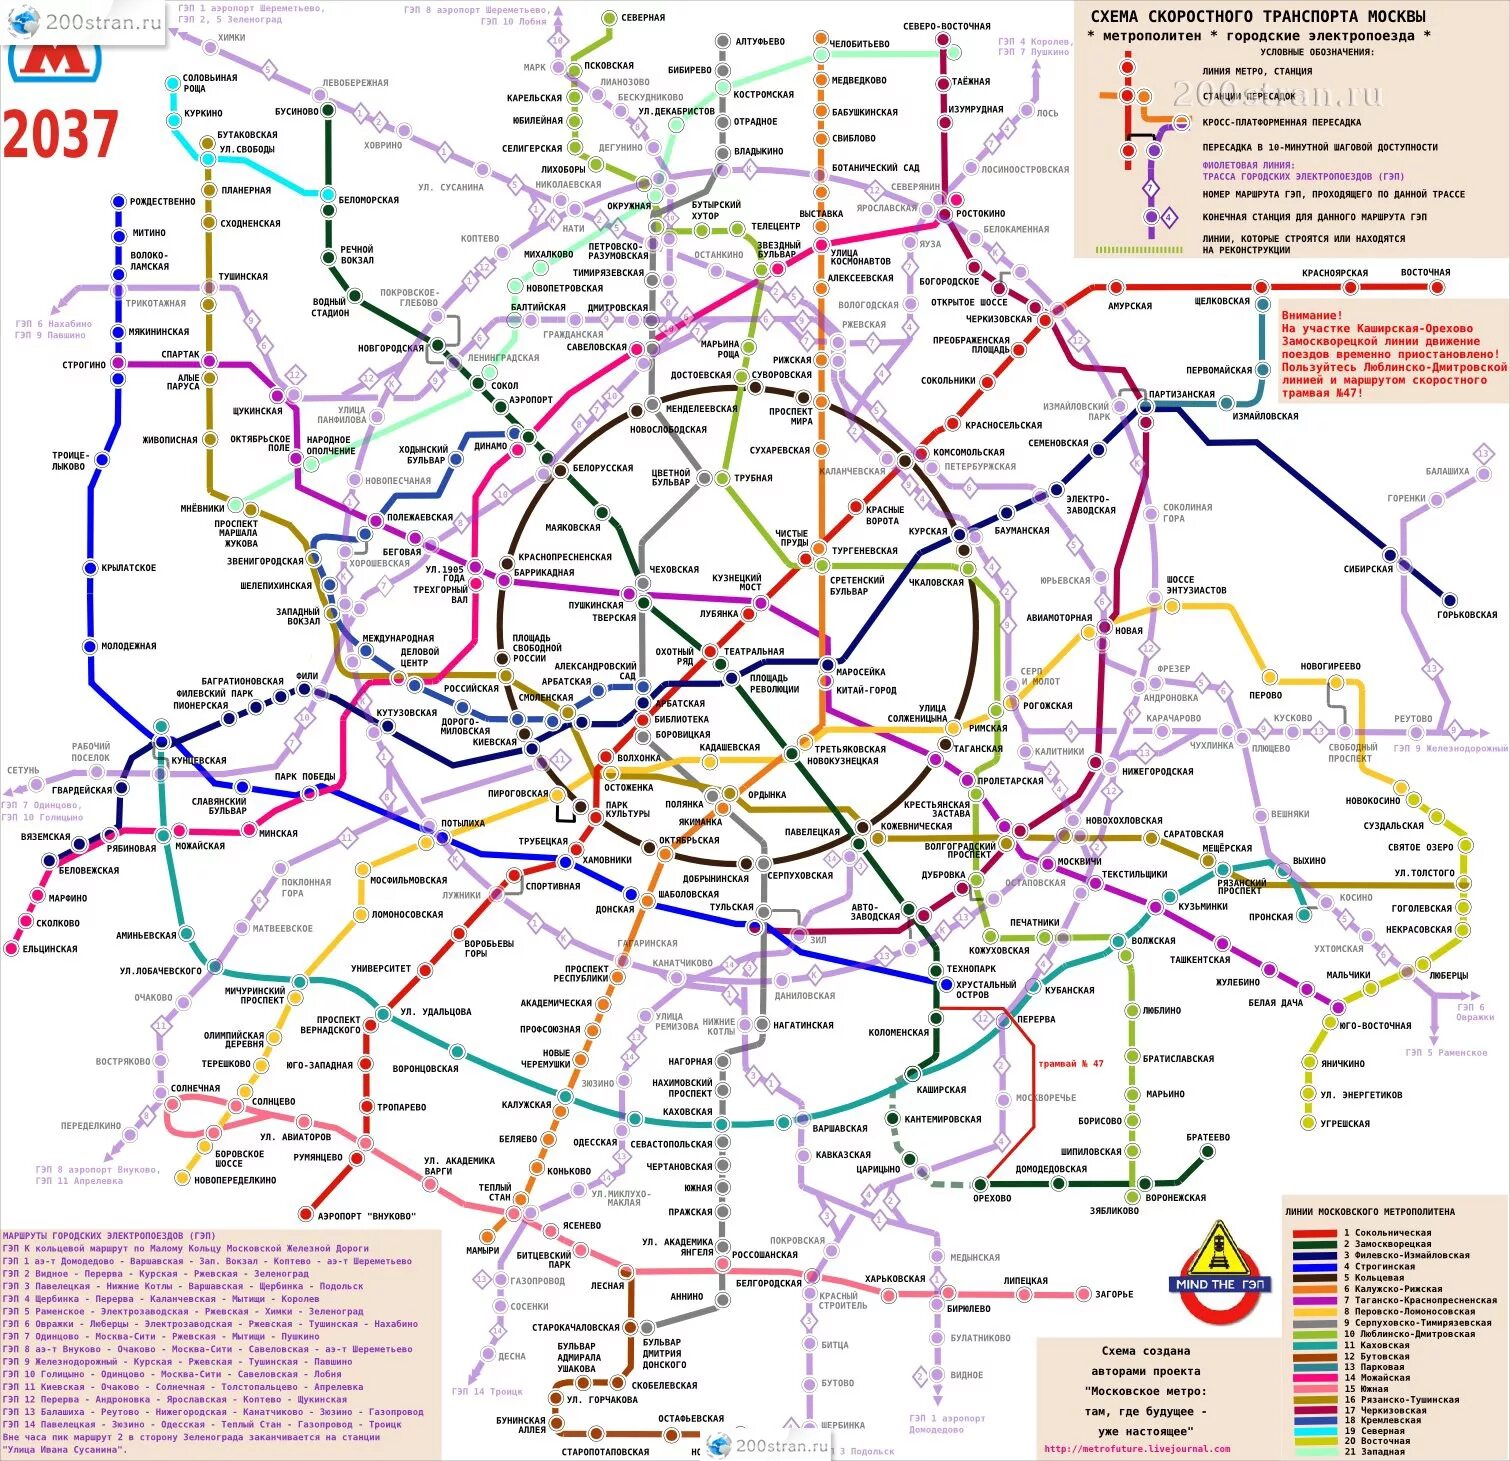 Карта метро 2030 Москва схема. Карта метро до 2027 года Москва. Схема Московского метрополитена 2030 года. План развития метро Москвы до 2035 года схема. Сравни ее с современной схемой московского метрополитена